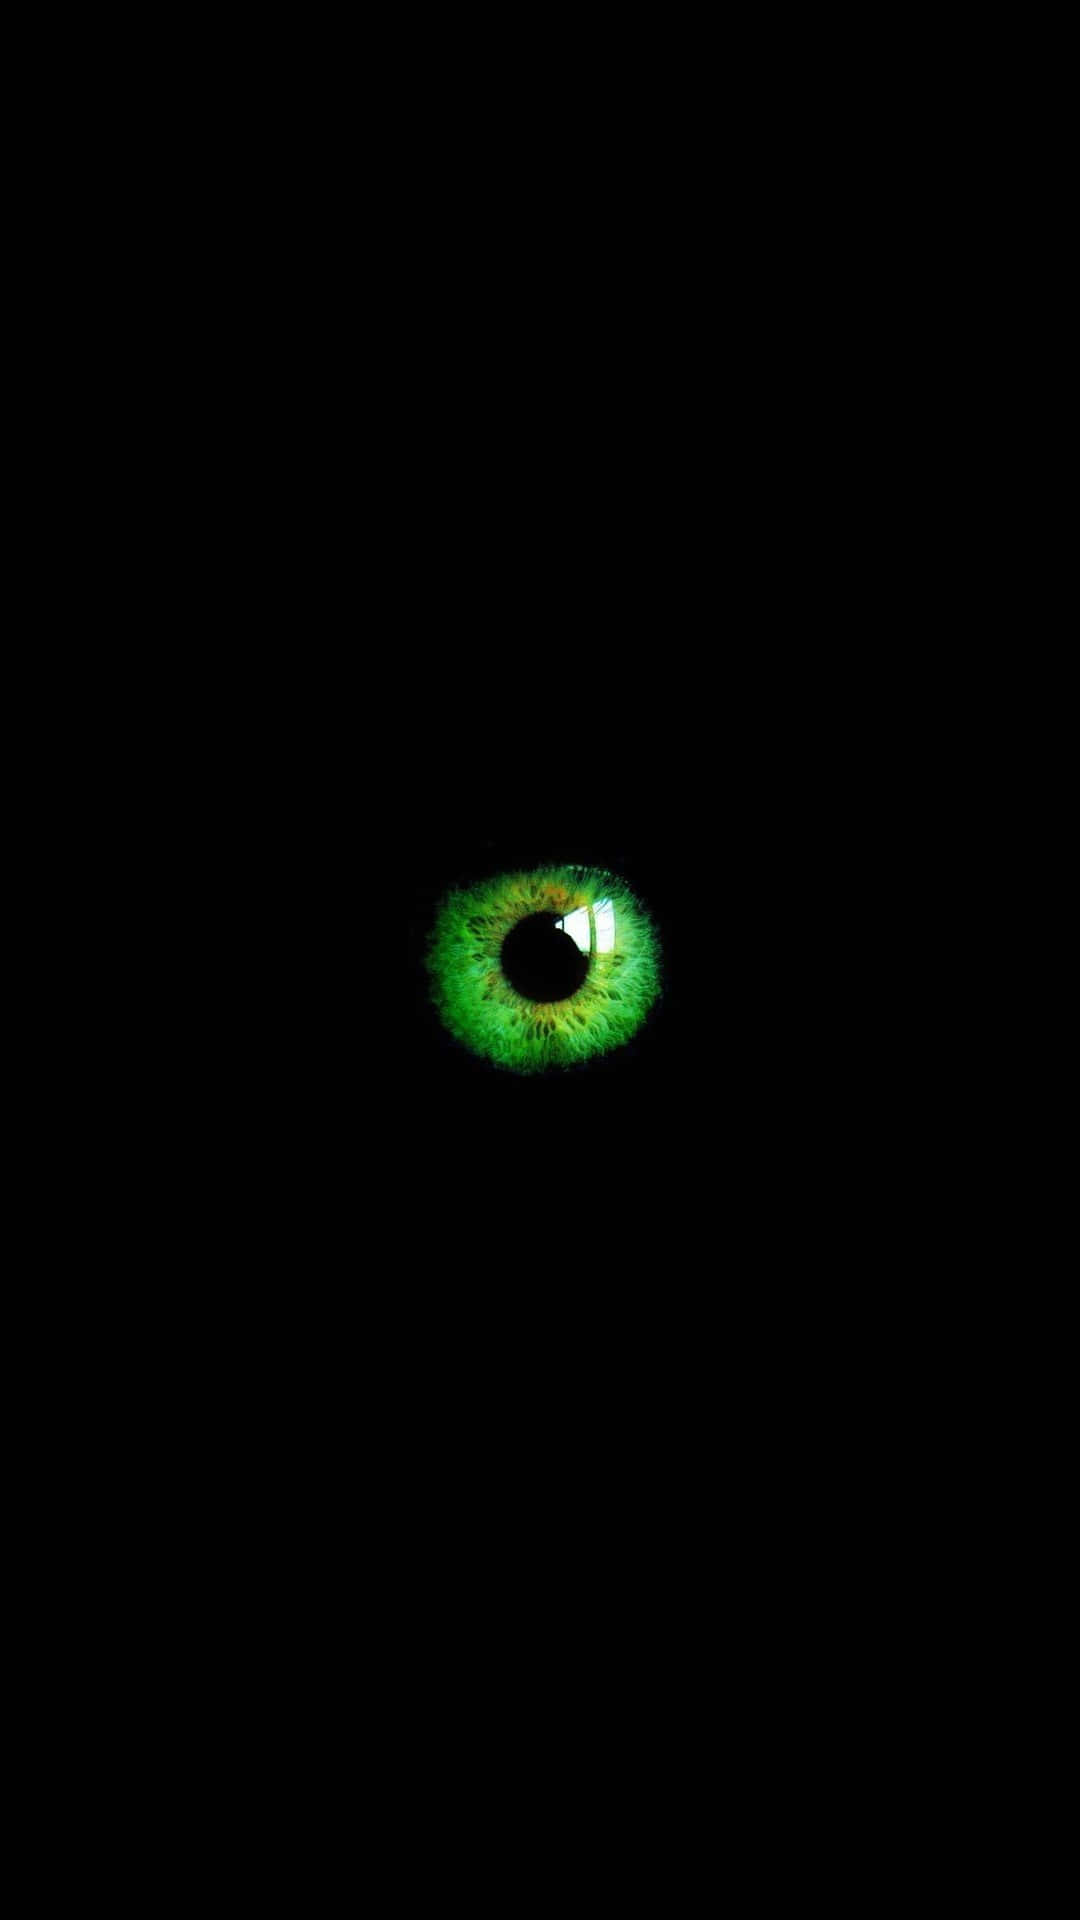 Single Green Eye Digital Art Wallpaper